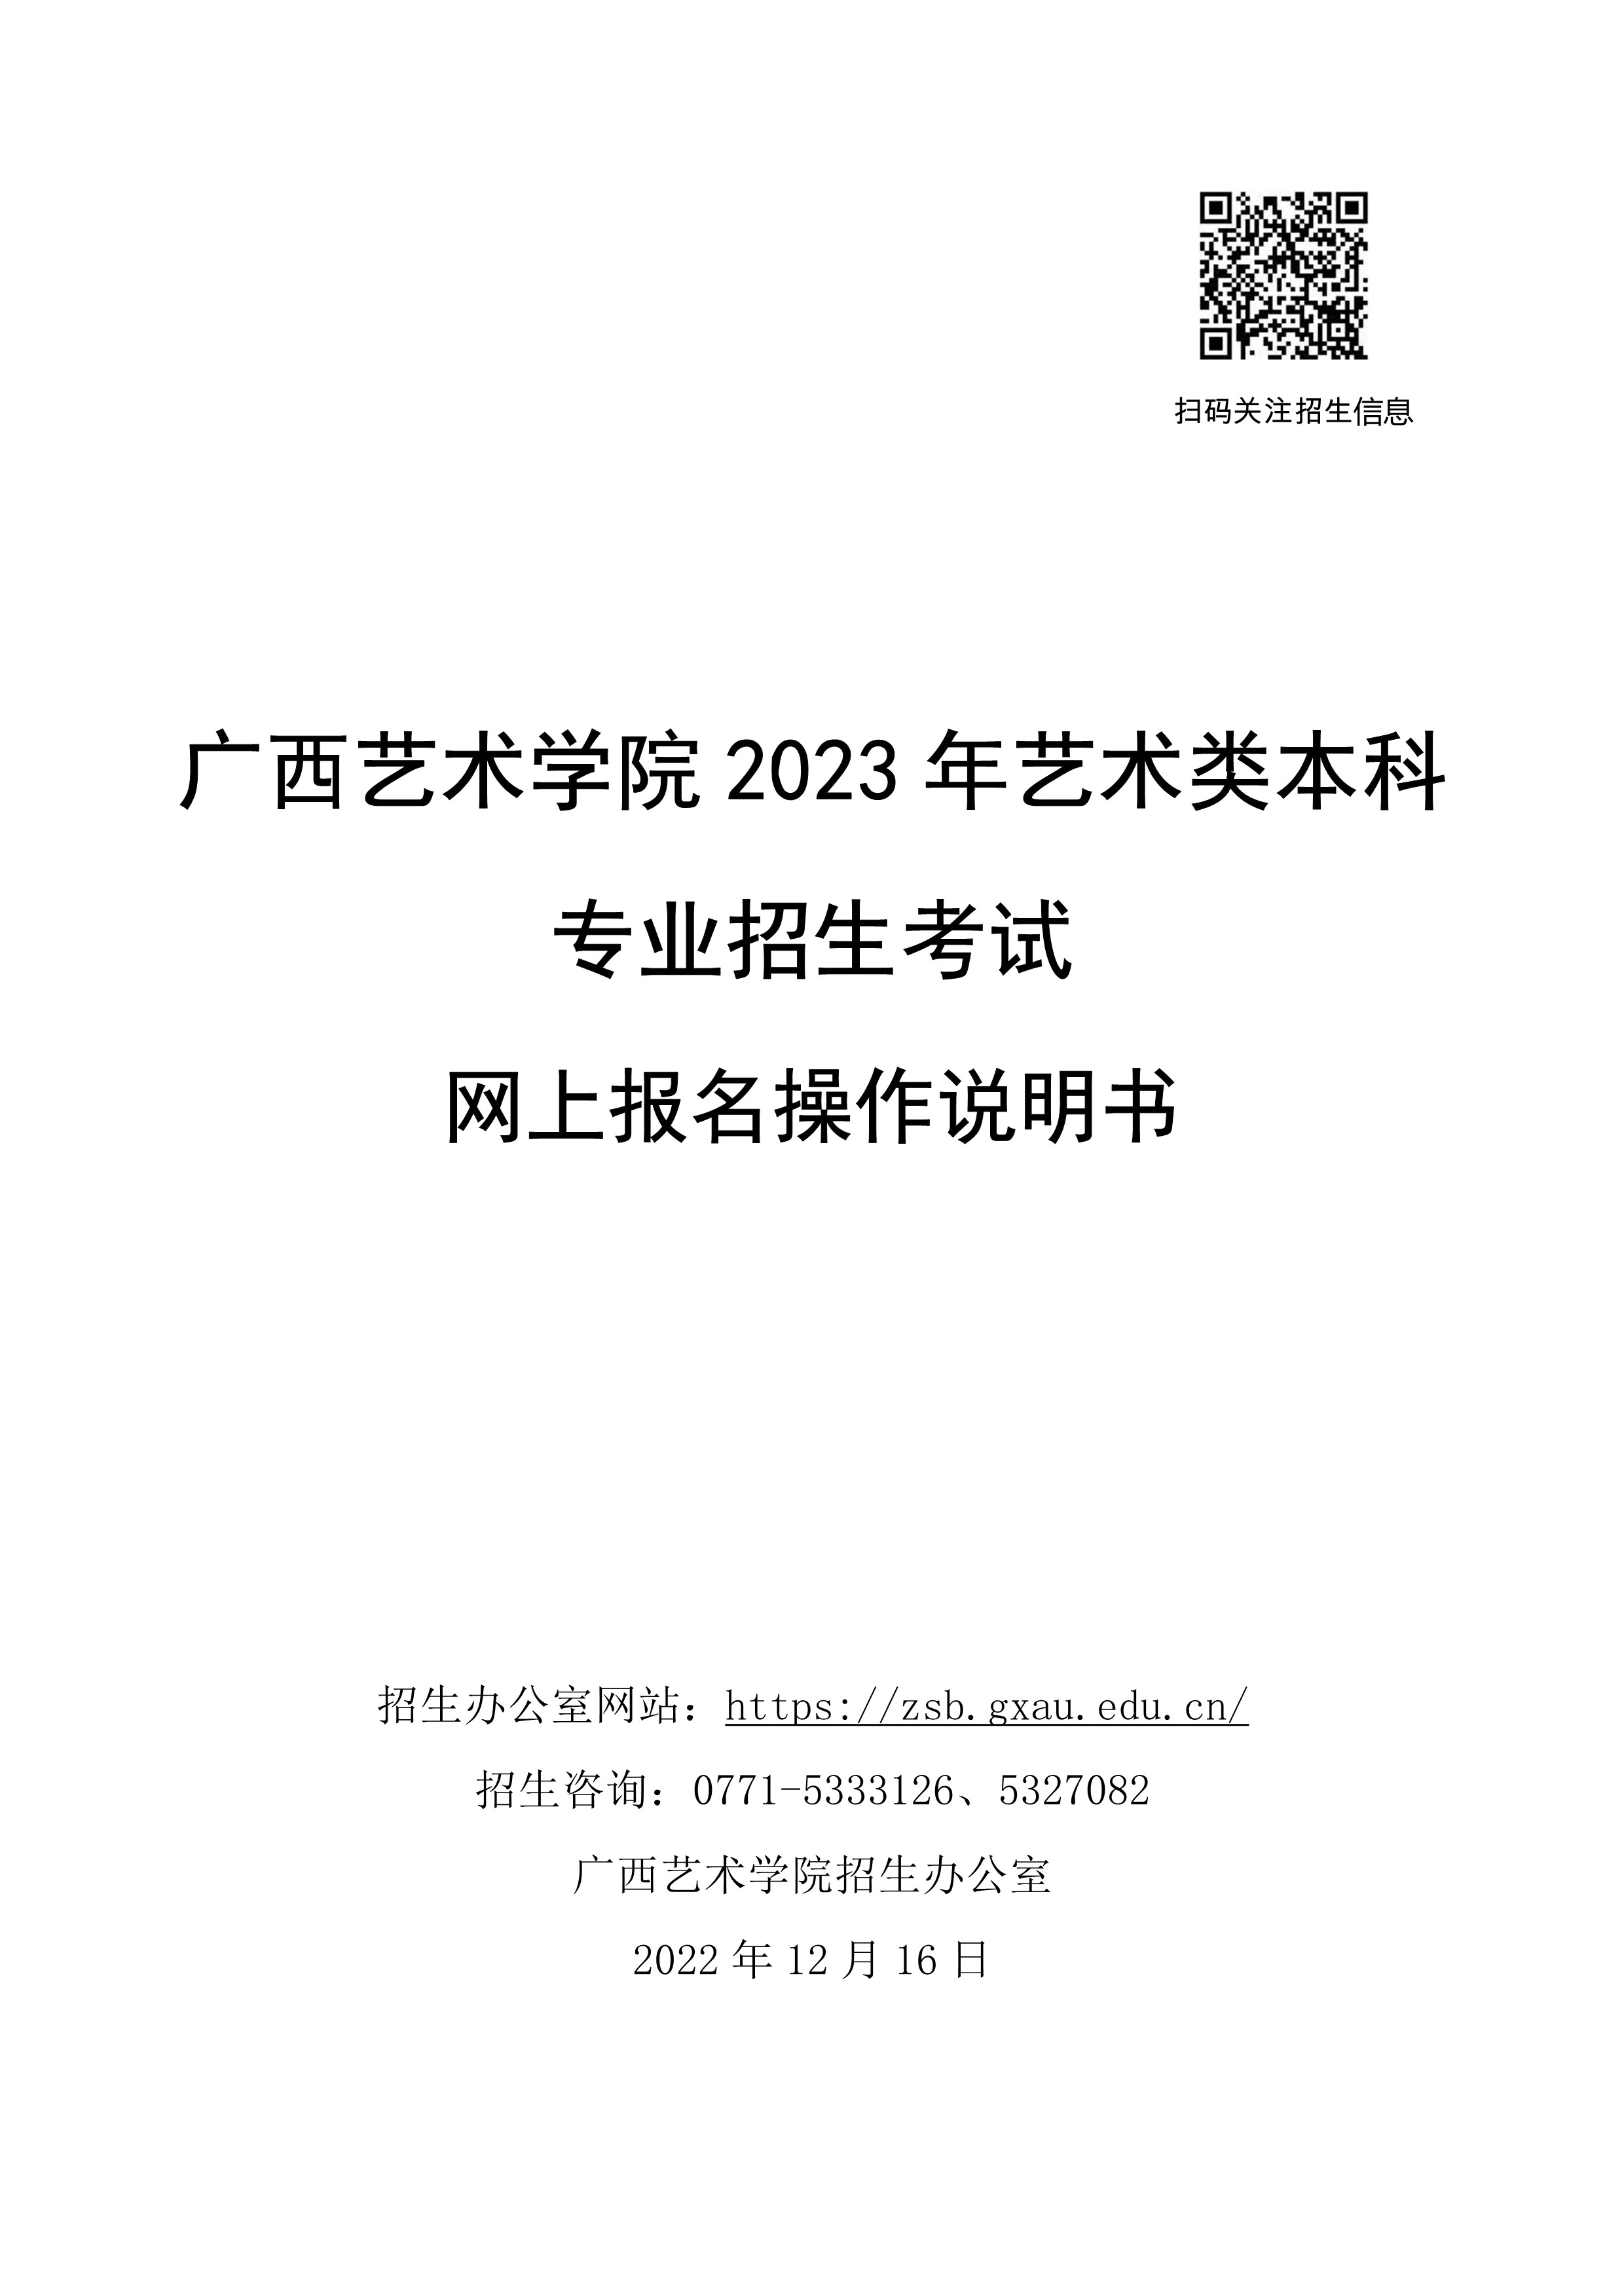 广西艺术学院2023年校考网上报考操作说明_1.jpg